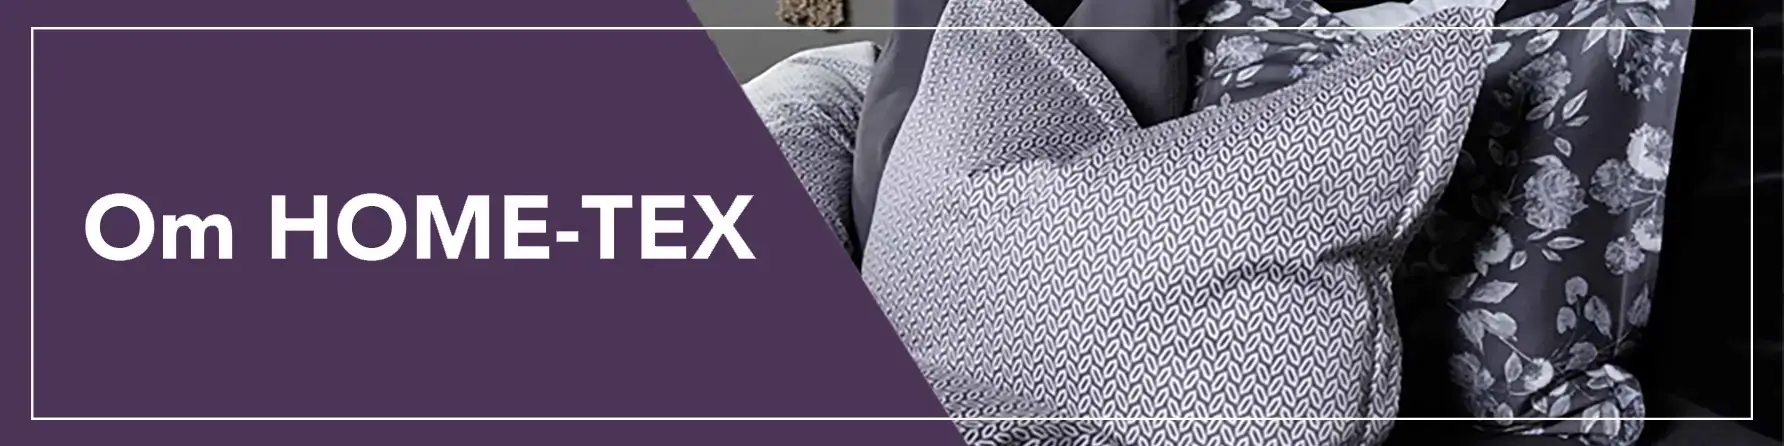 HOME-TEX - Altid billige dyner, puder, sengetøj, dobbeltdyner og håndklæder